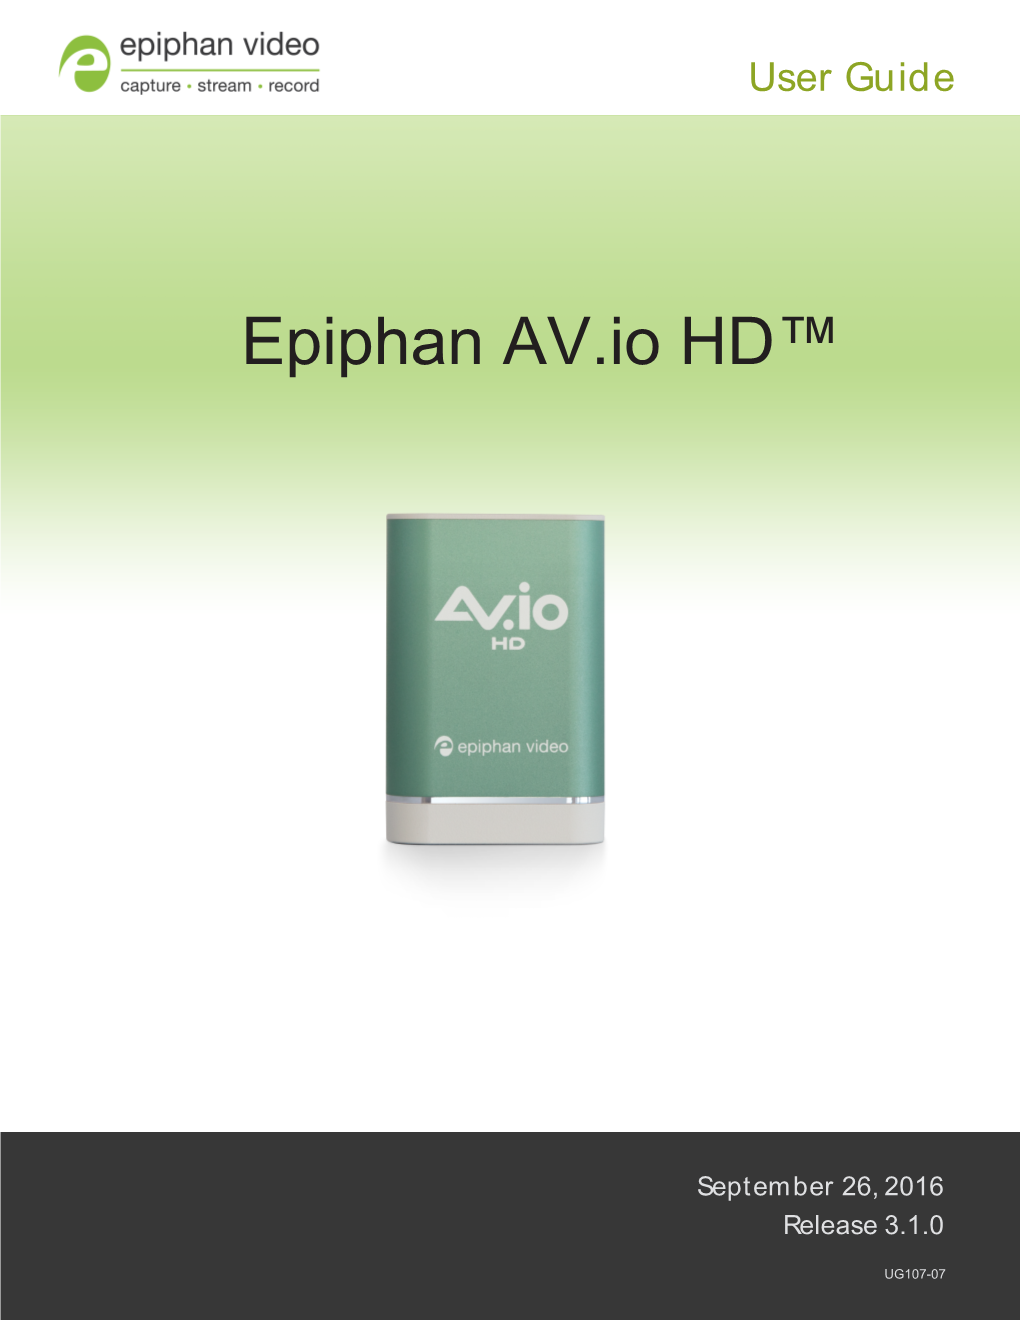 Epiphan AV.Io HD User Guide